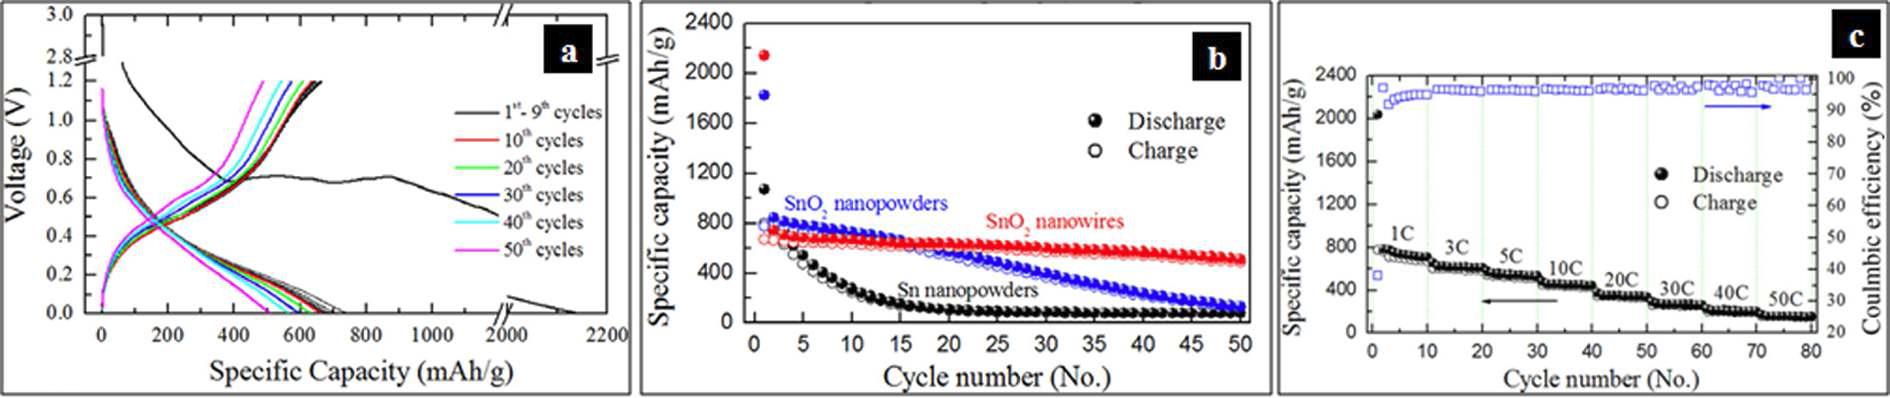 자가지지형 1차원 나노선 SnO2의 전기화학적 특성 평가/분석